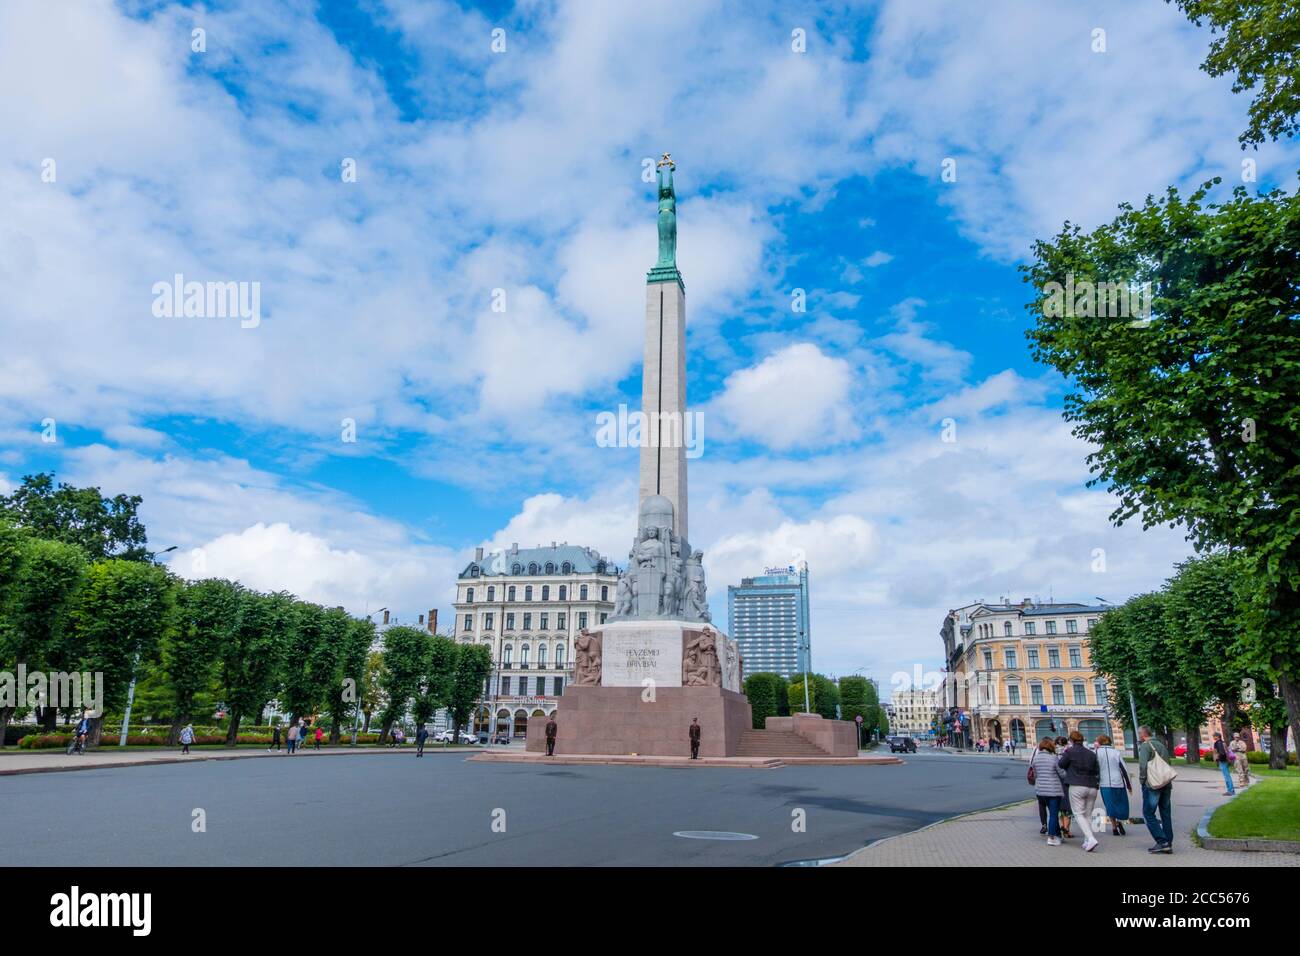 Brīvības pieemineklis, das Freiheitsdenkmal, Brivibas Laukums, Riga, Lettland Stockfoto